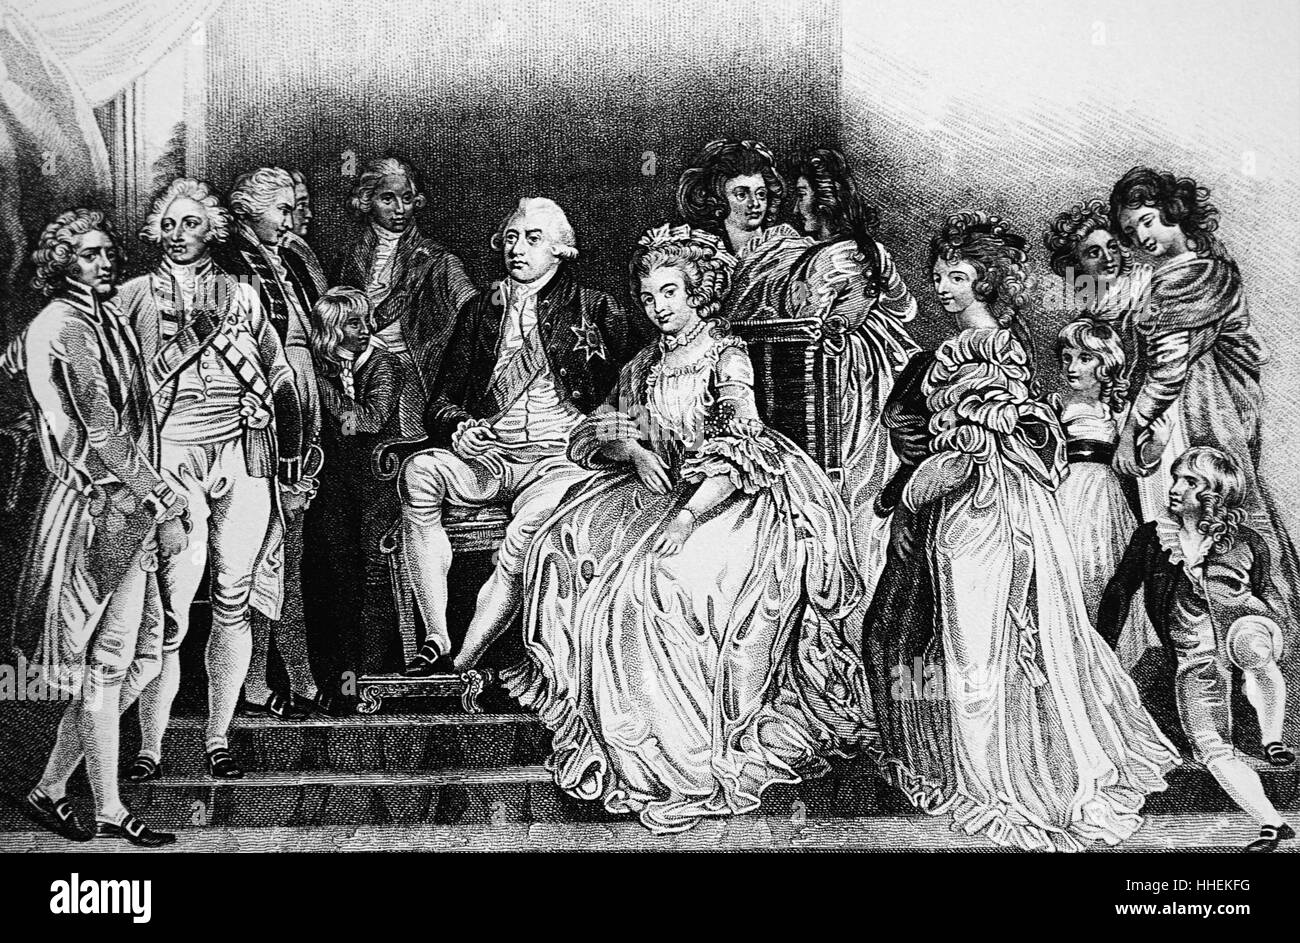 Illustration représentant le roi George III (1738-1829) avec son épouse Charlotte Sophia (1744-1818) et de leur famille, y compris le roi George VI (1762-1830). En date du 19e siècle Banque D'Images